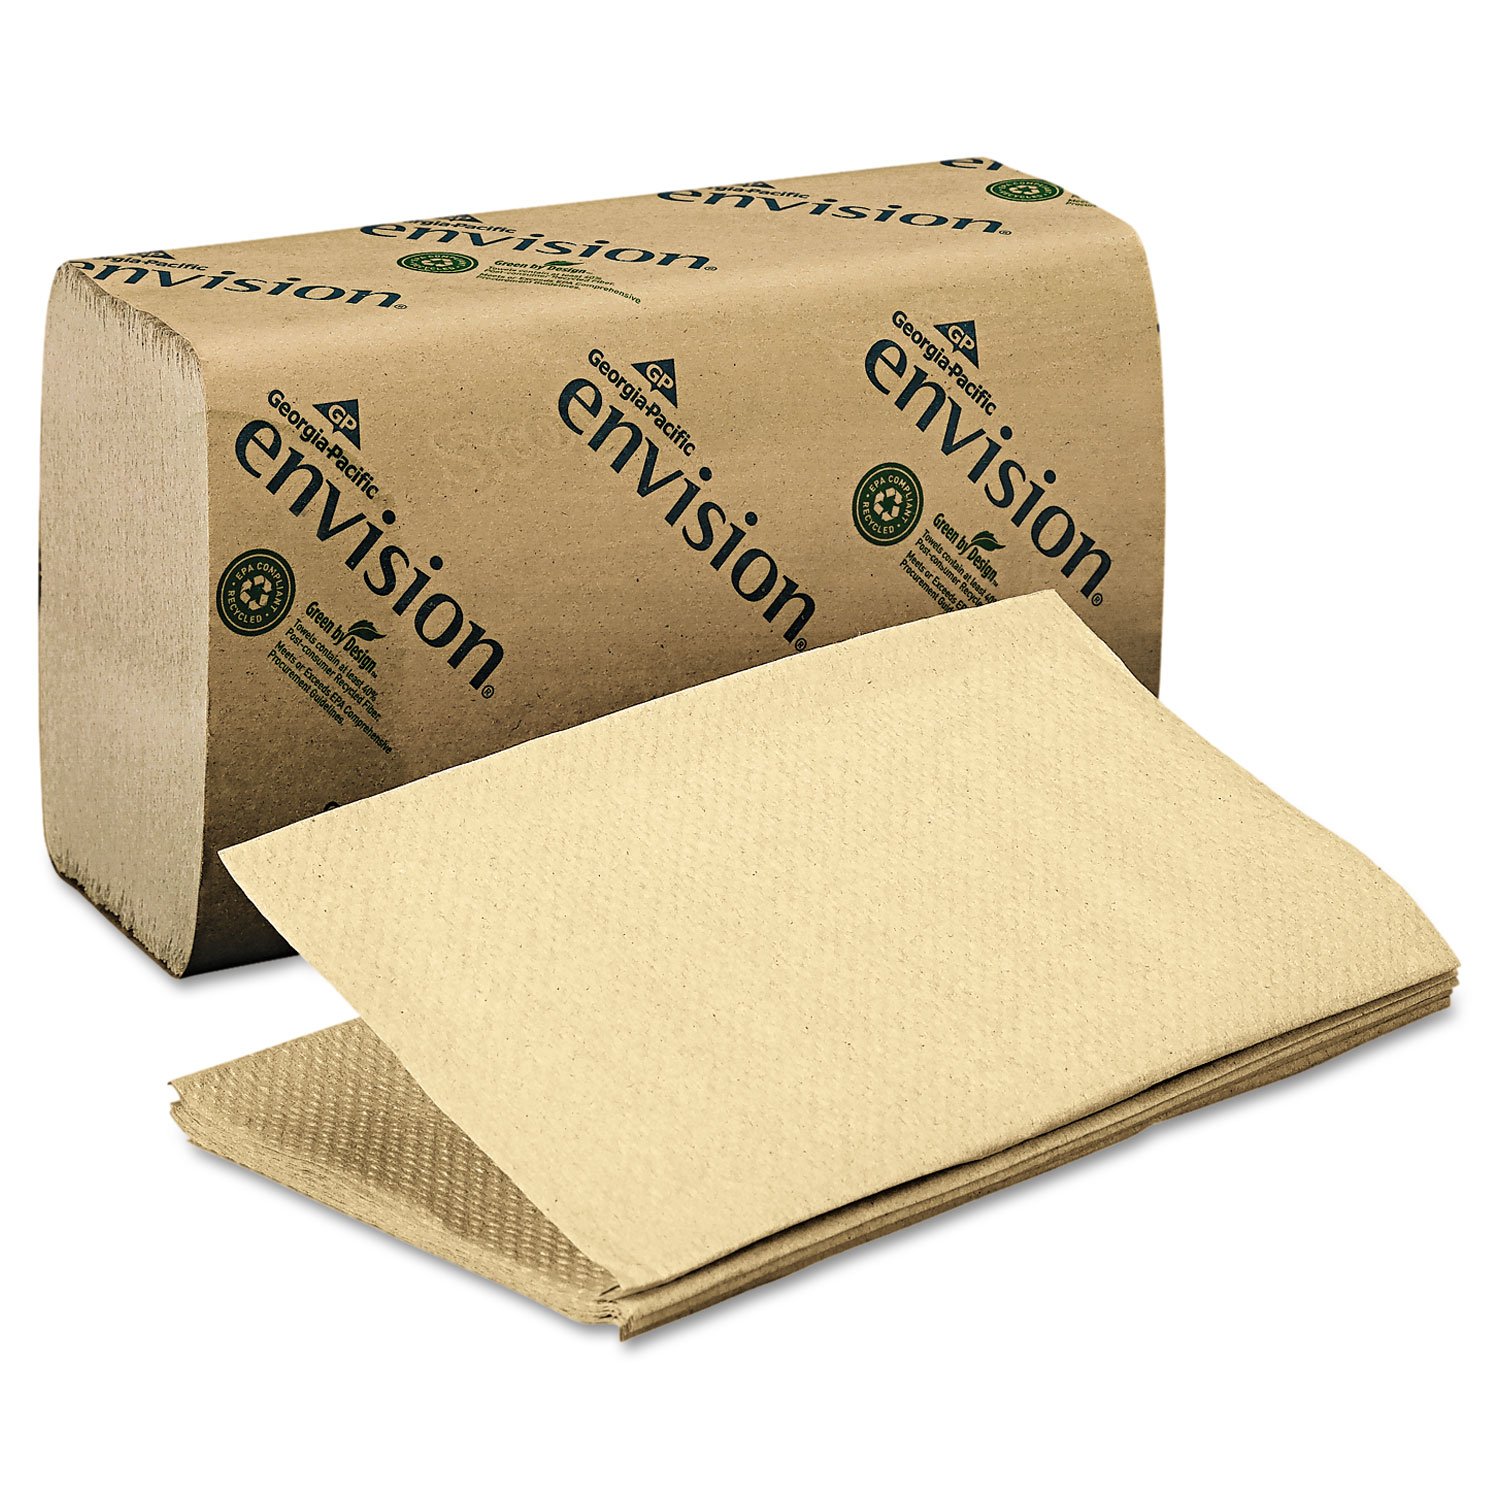 Georgia Pacific 23504 1 Fold Paper Towel, 10 1/4 x 9 1/4, Brown, 250/Pack, 16 Packs/Carton